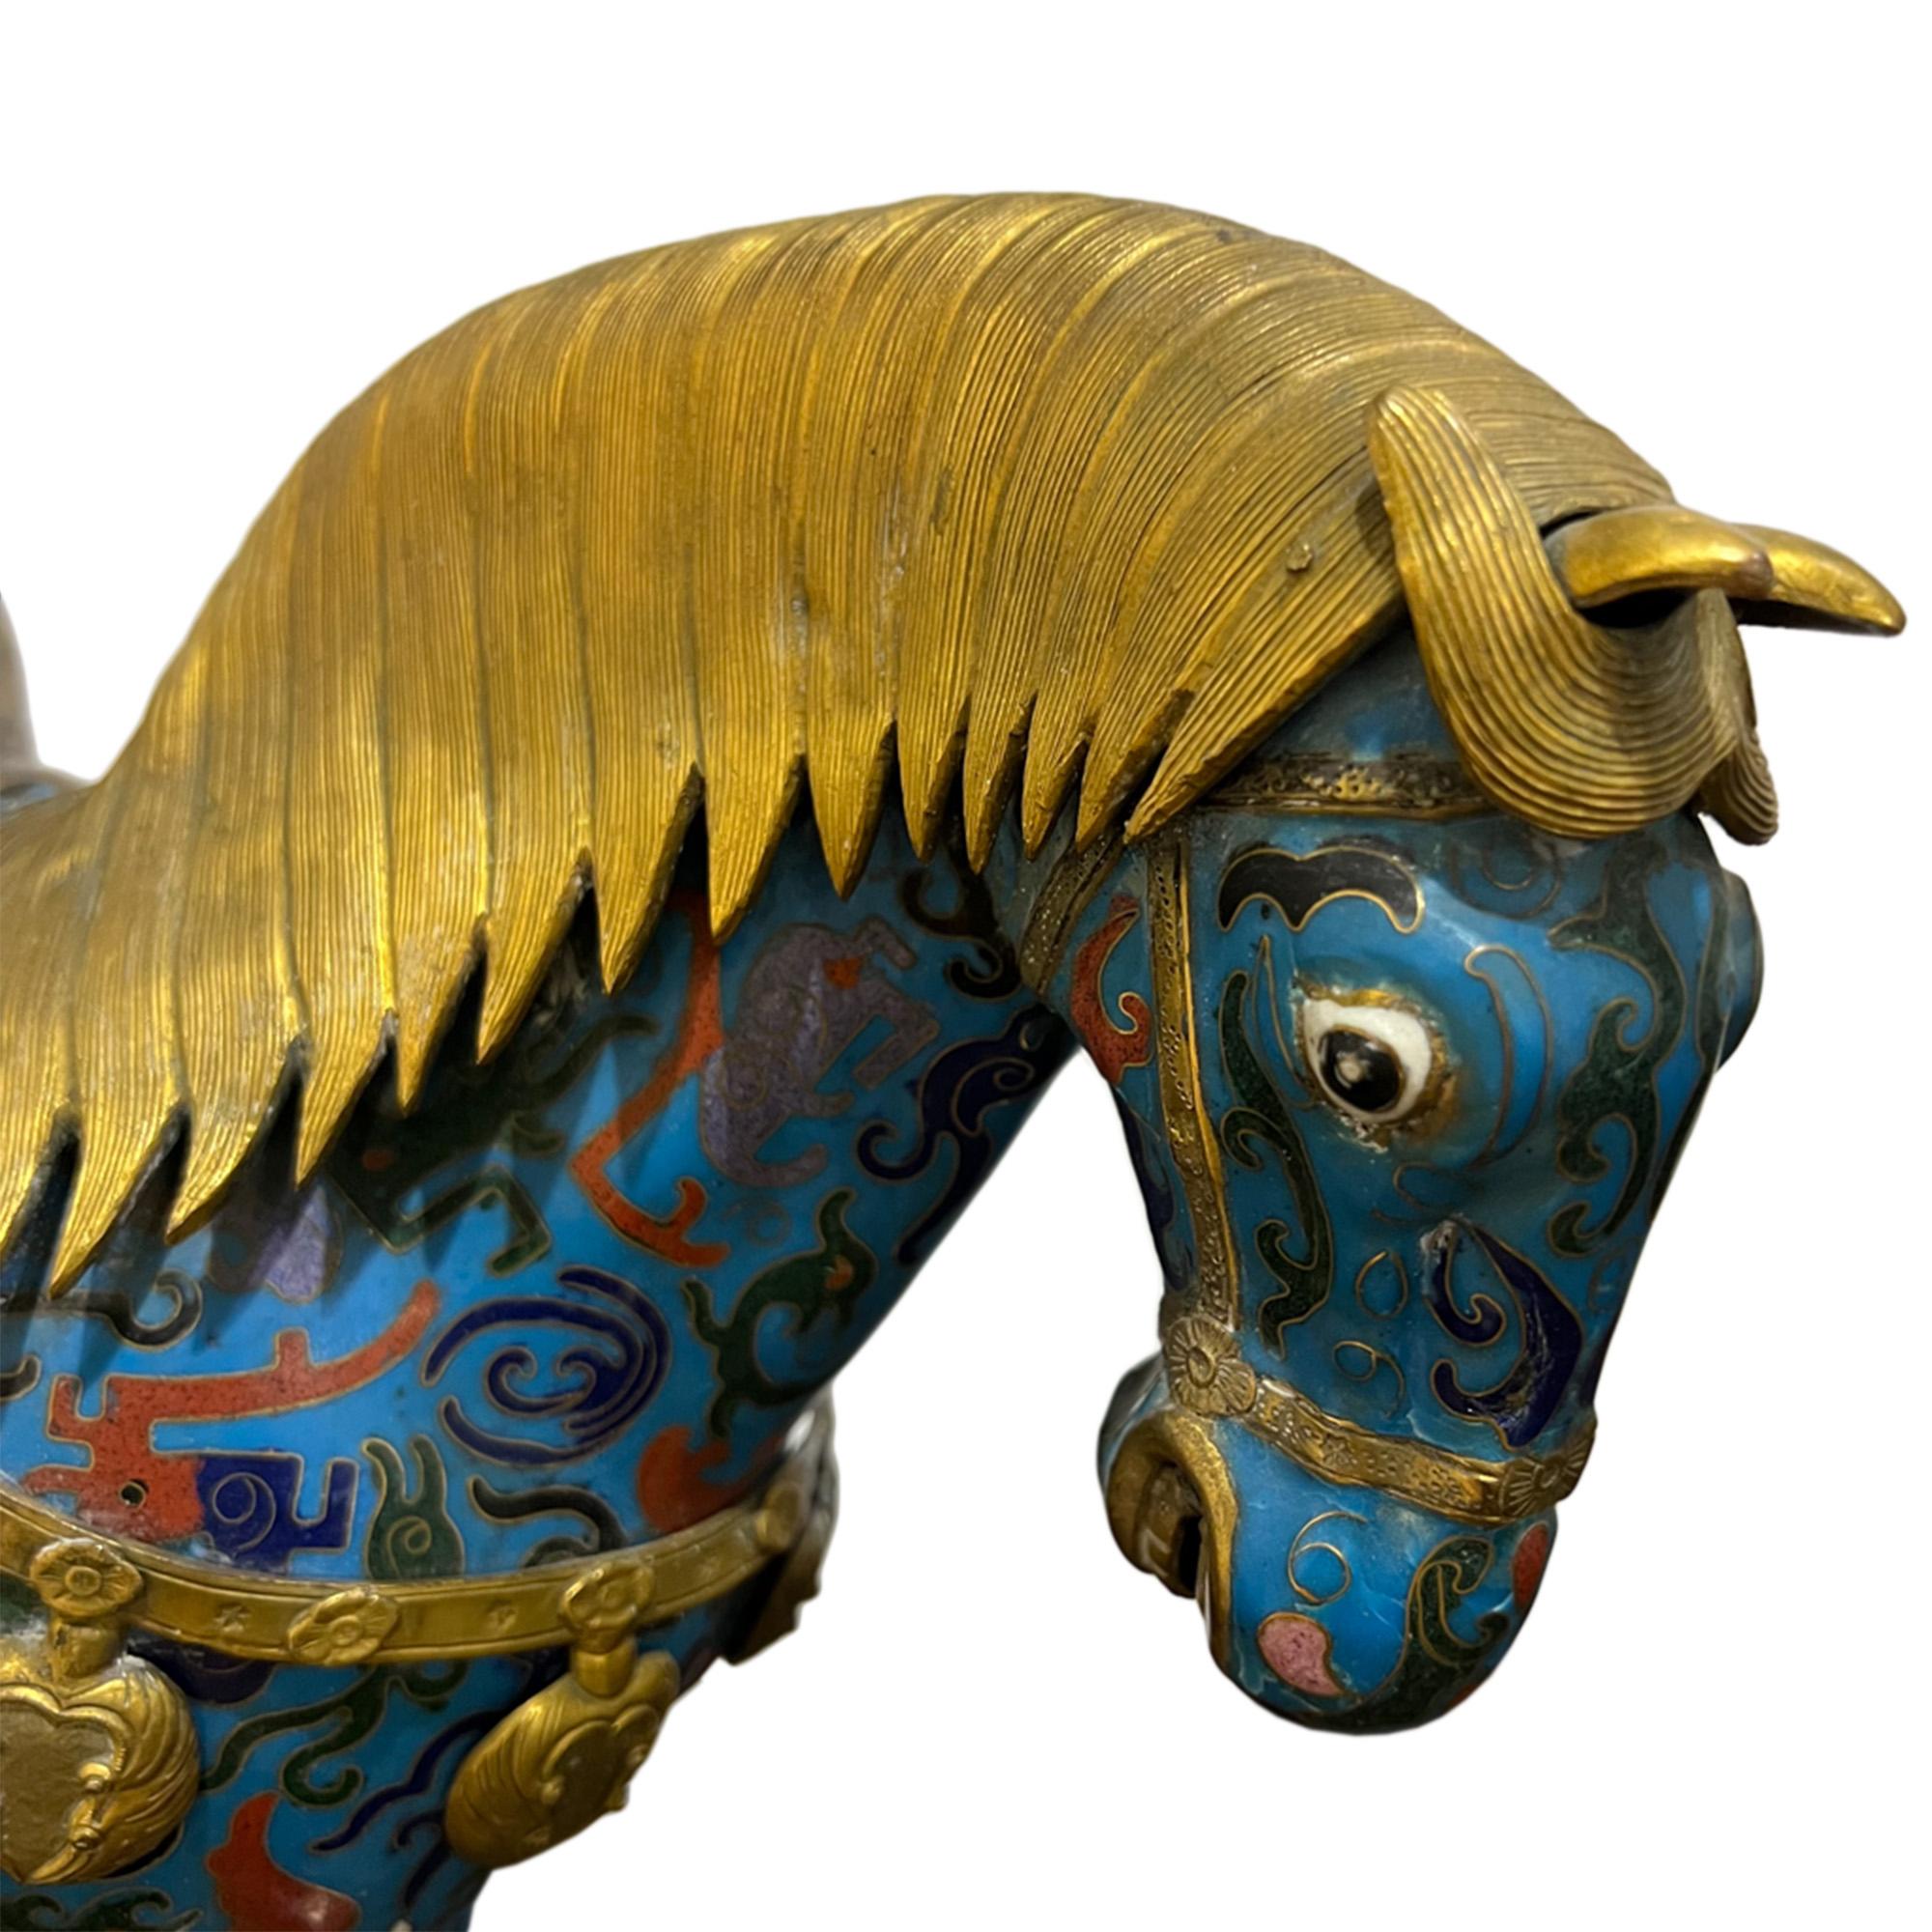 Ein fantastisches Paar Pferde aus Emaille, Gold und Kupfer. Schauen Sie sich alle unsere Bilder an, um die komplizierten Details und die lebensechten Ausdrücke zu sehen - und auch die erstaunlichen Farben. 

Hergestellt in China in der Mitte des 20.